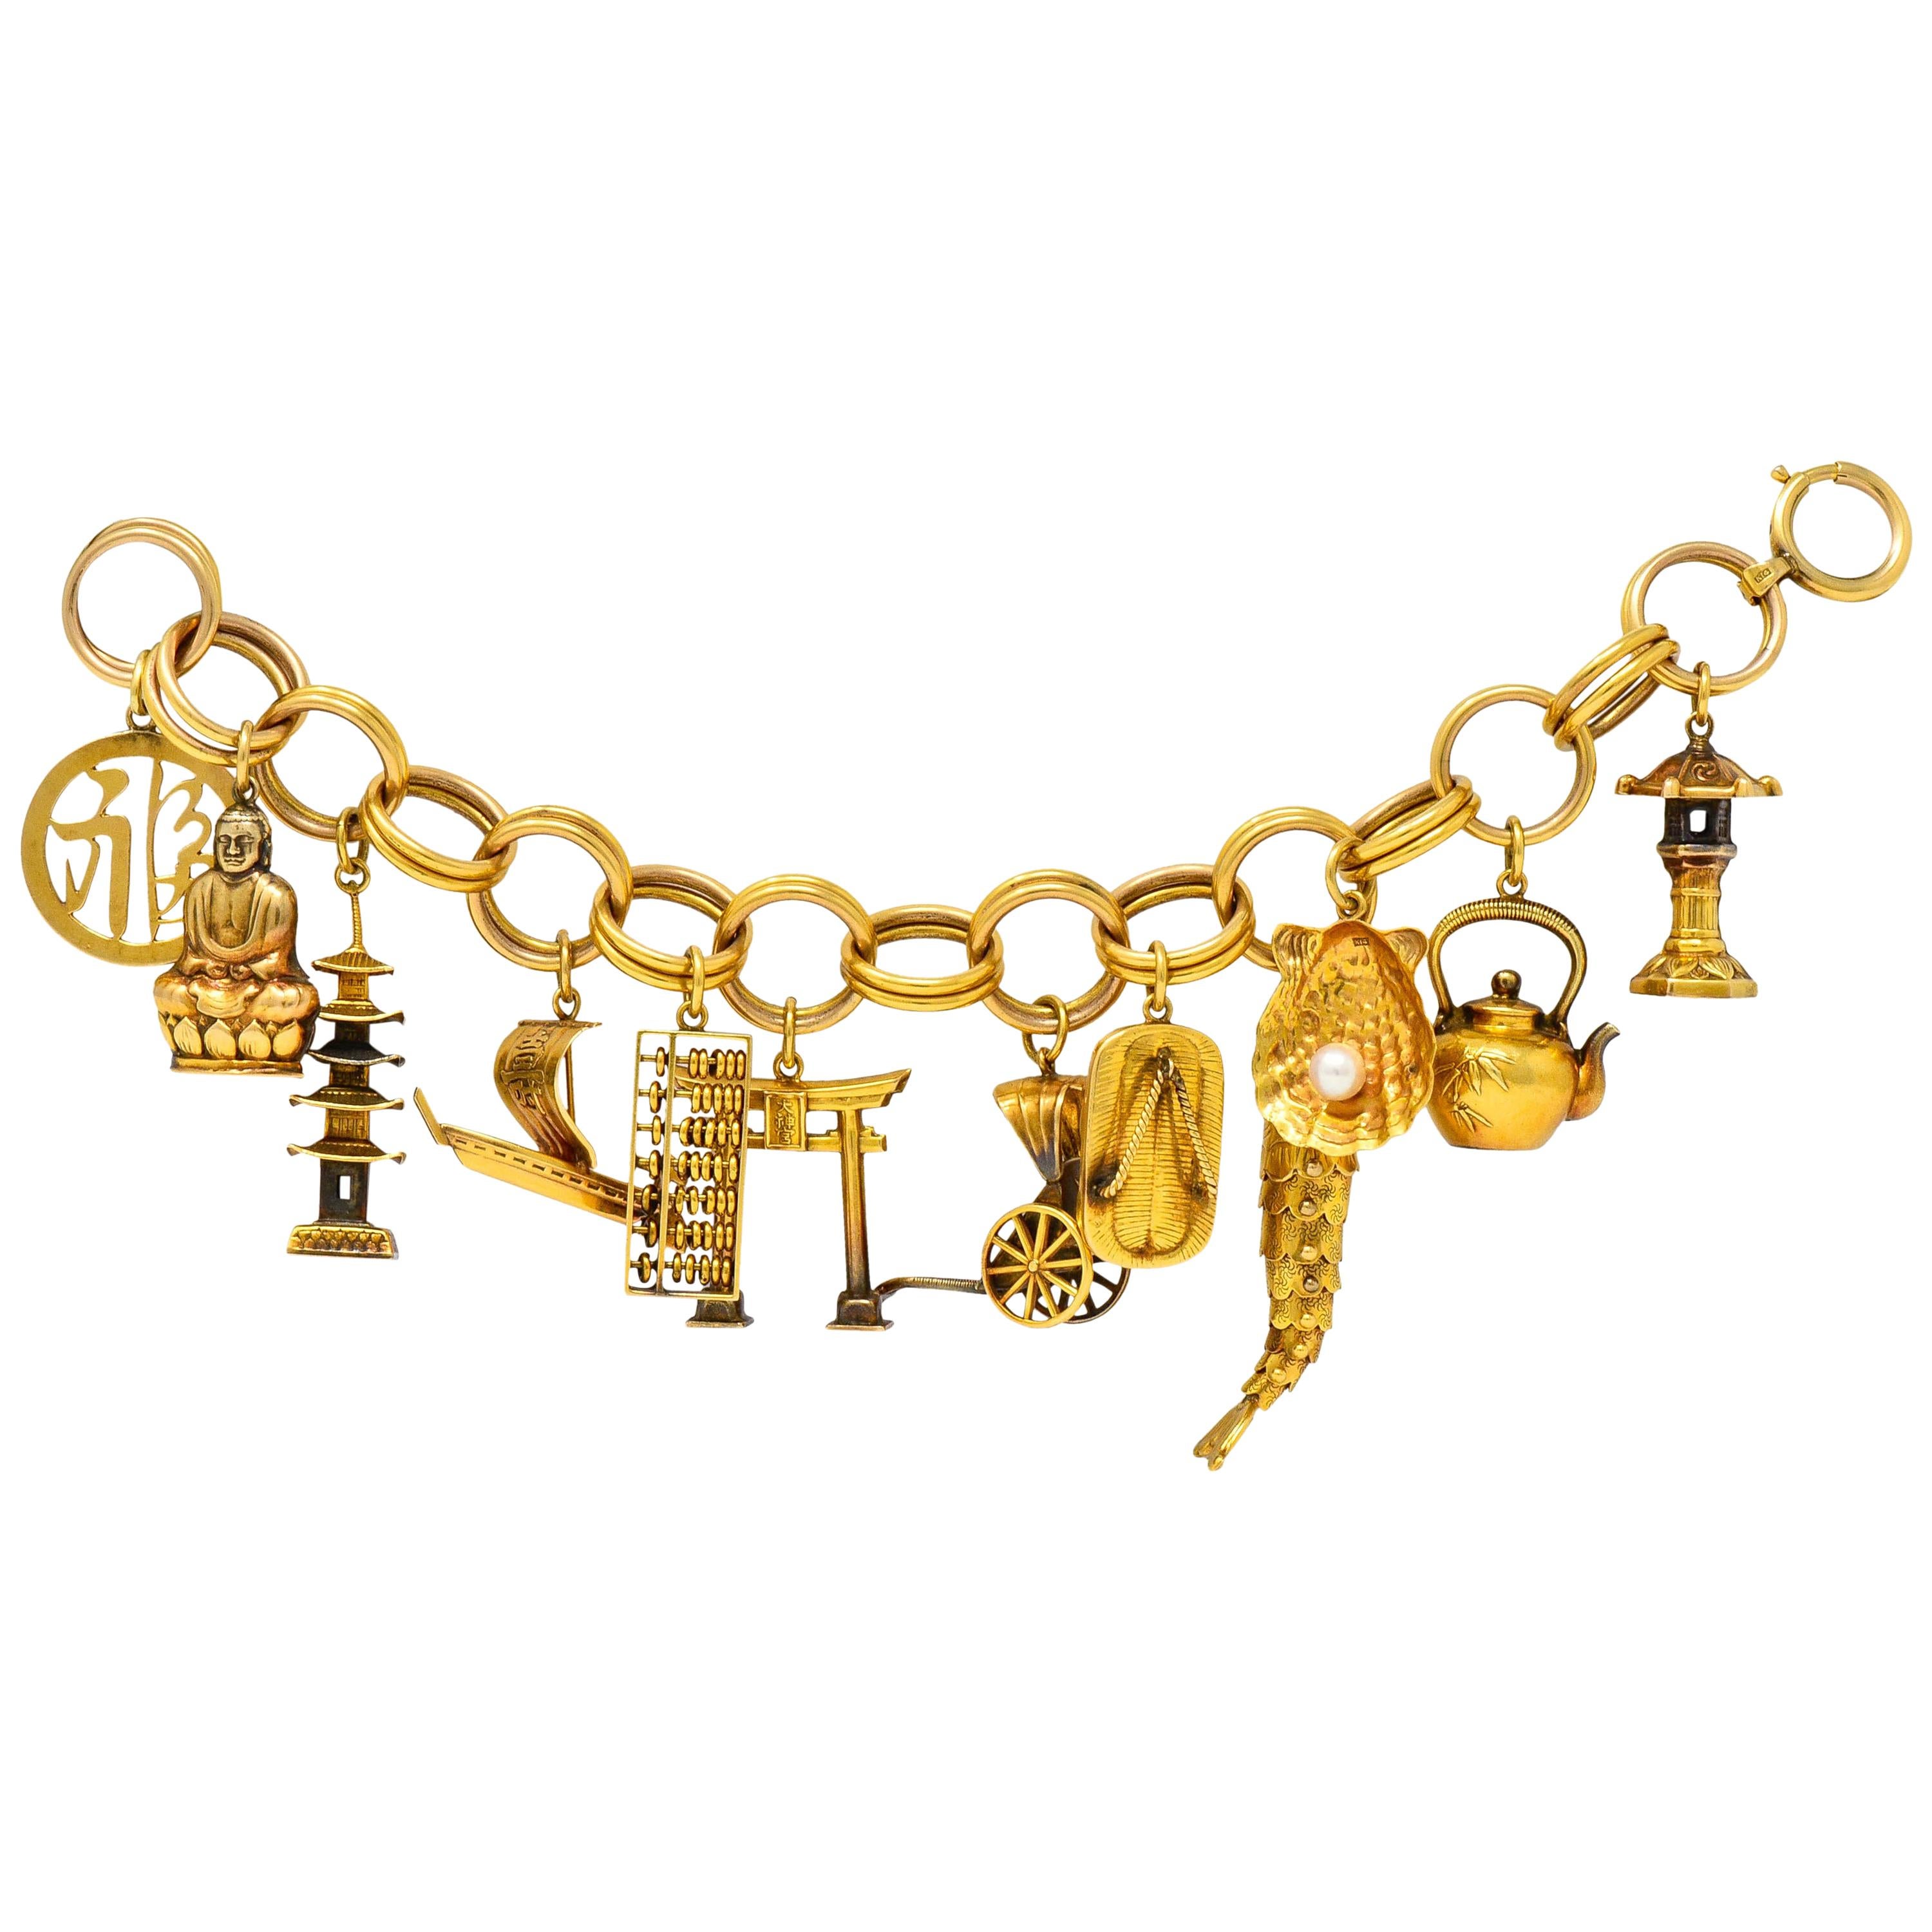 Substantial Kichigoro Uyeda Retro Perle 14 Karat Gold Japanisches Charm-Armband